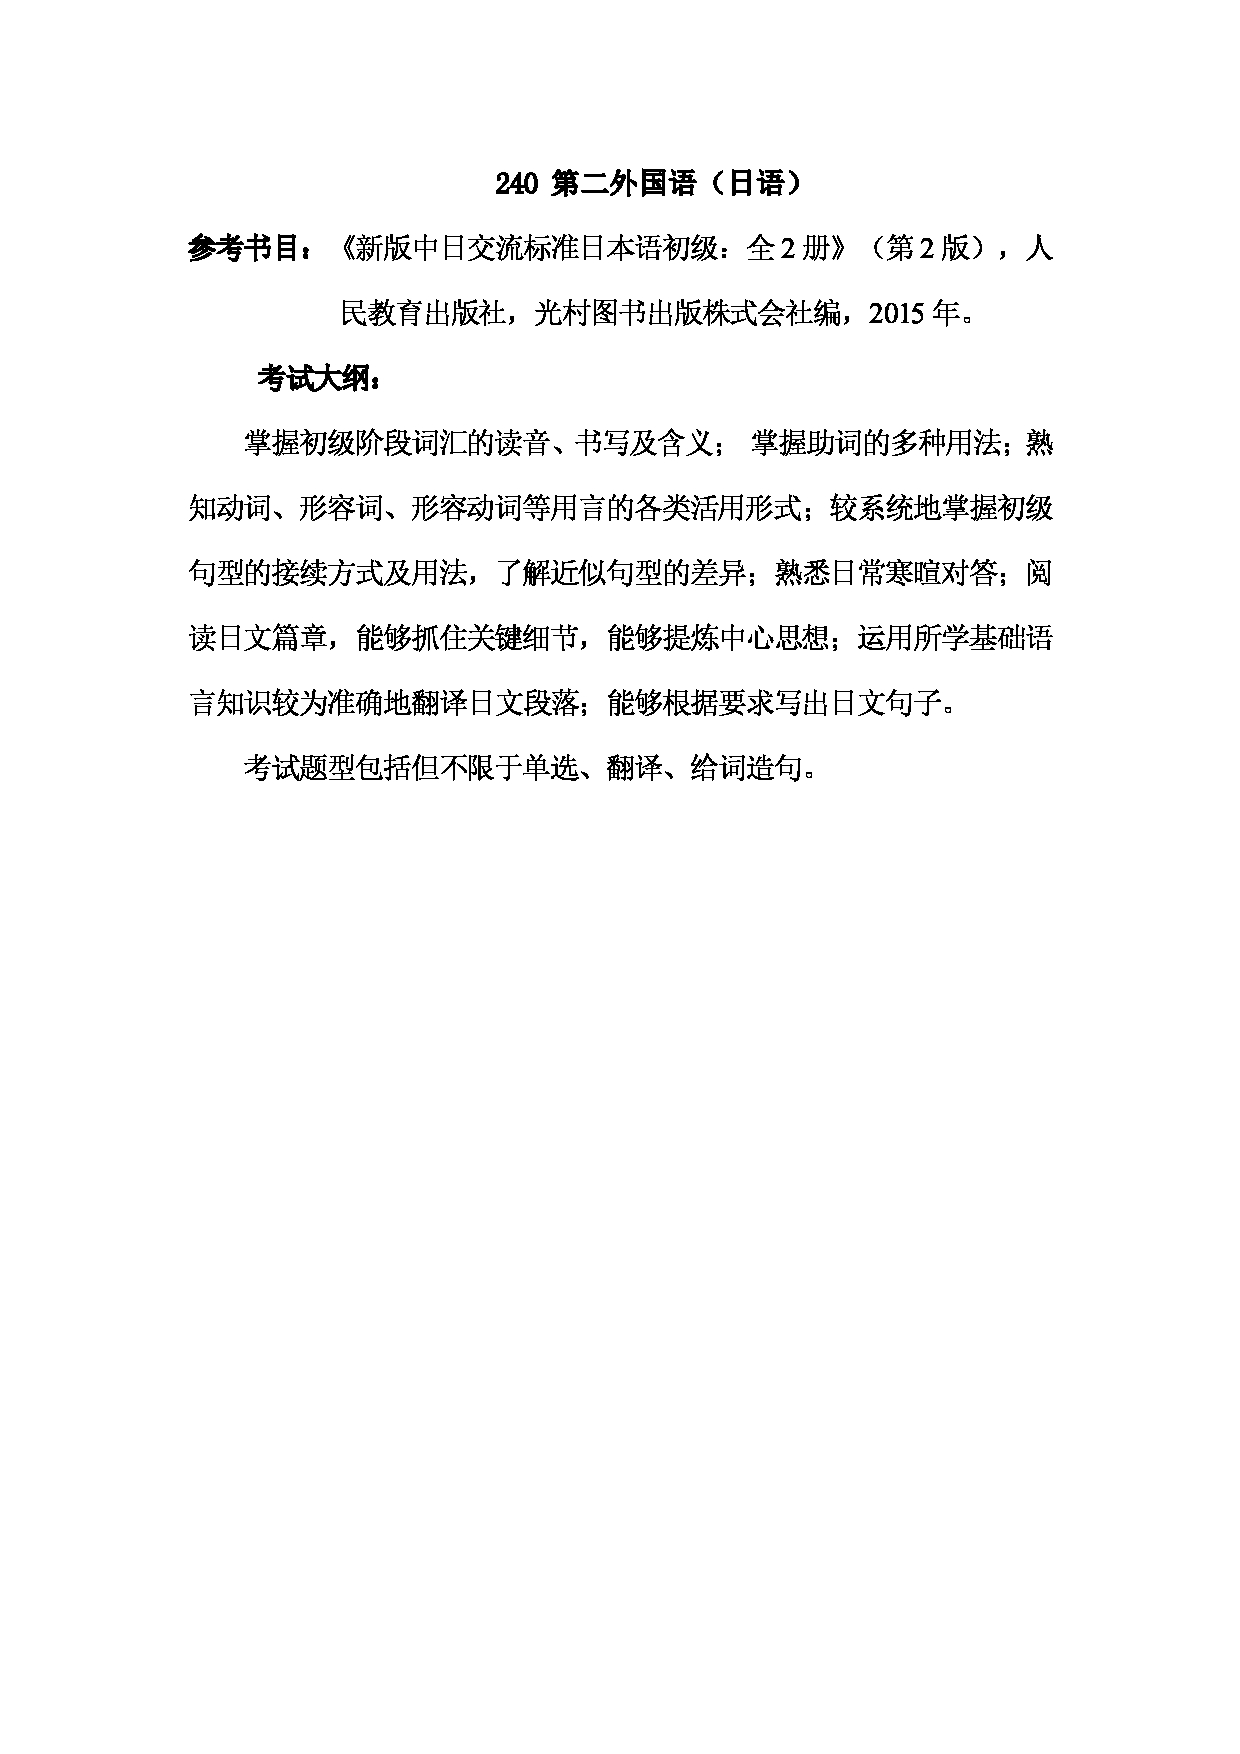 2023考研大纲：武汉科技大学2023年考研科目 240-第二外国语(日语) 考试大纲第1页